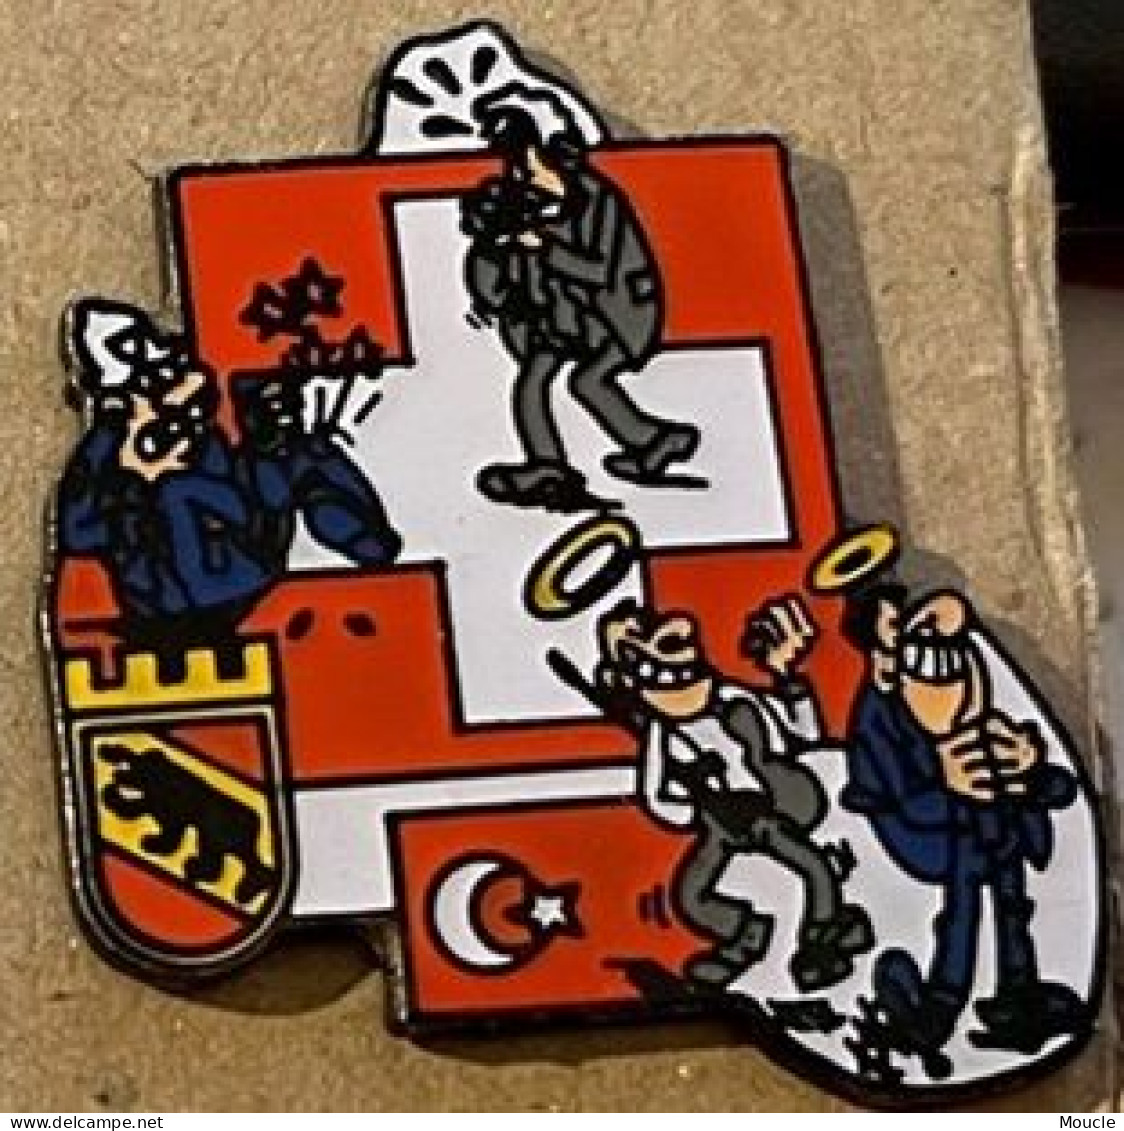 POLICE VILLE DE BERNE SUISSE - STADT POLIZEI BERN - SCHWEIZ - POLICIA - SWITZERLAND - TURC  -  (33) - Police